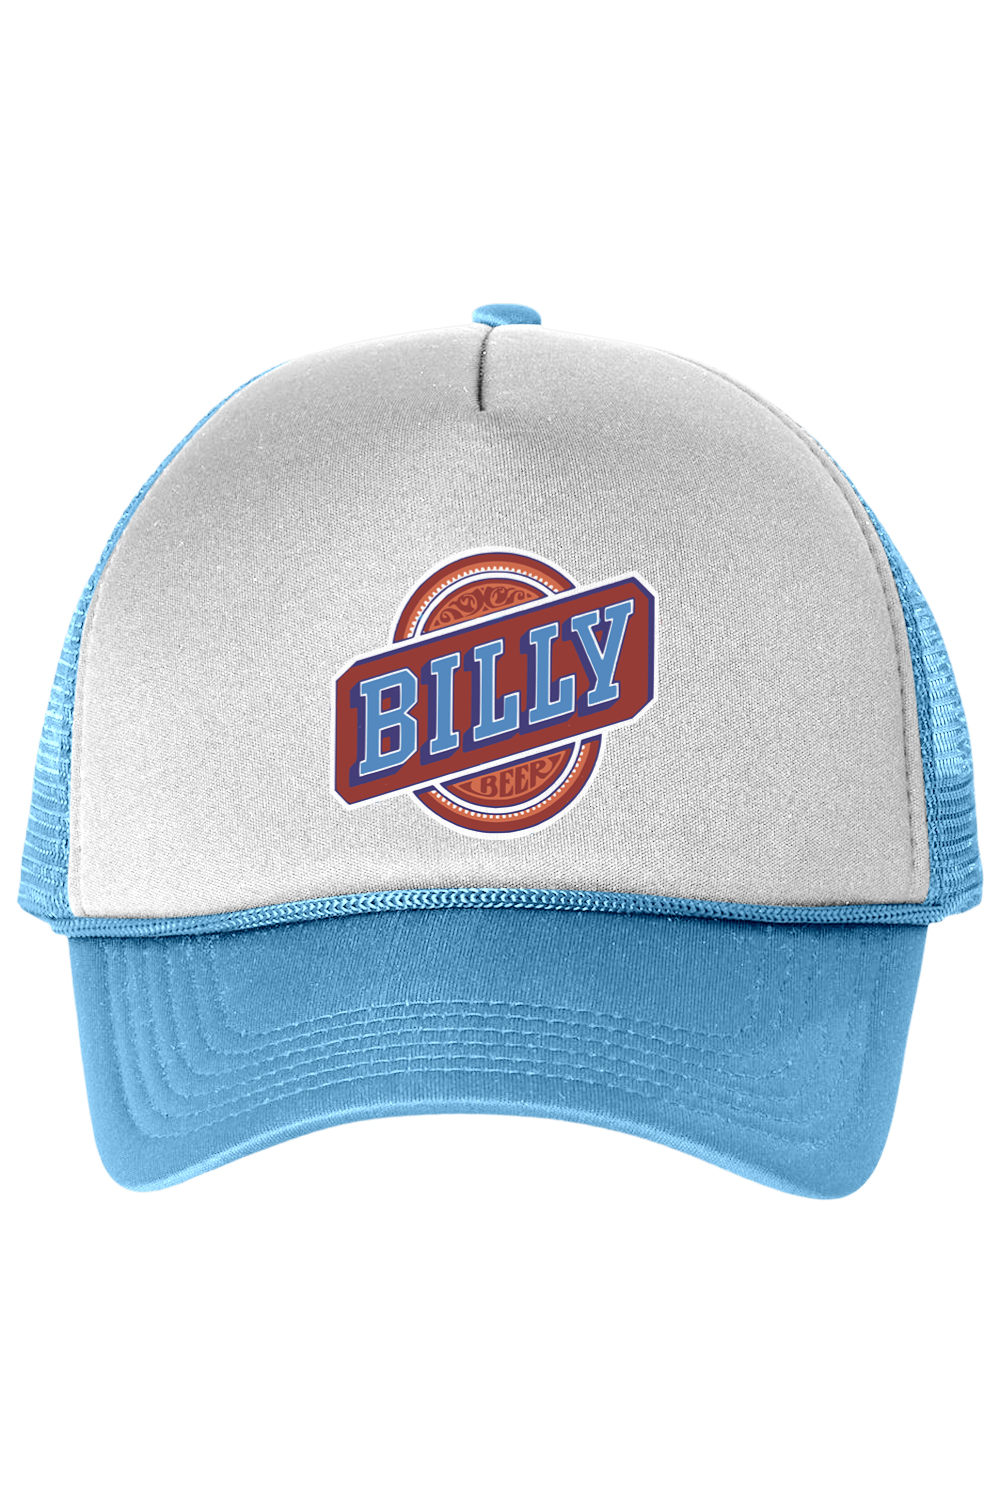 Billy Beer - Trucker Cap - Yinzylvania